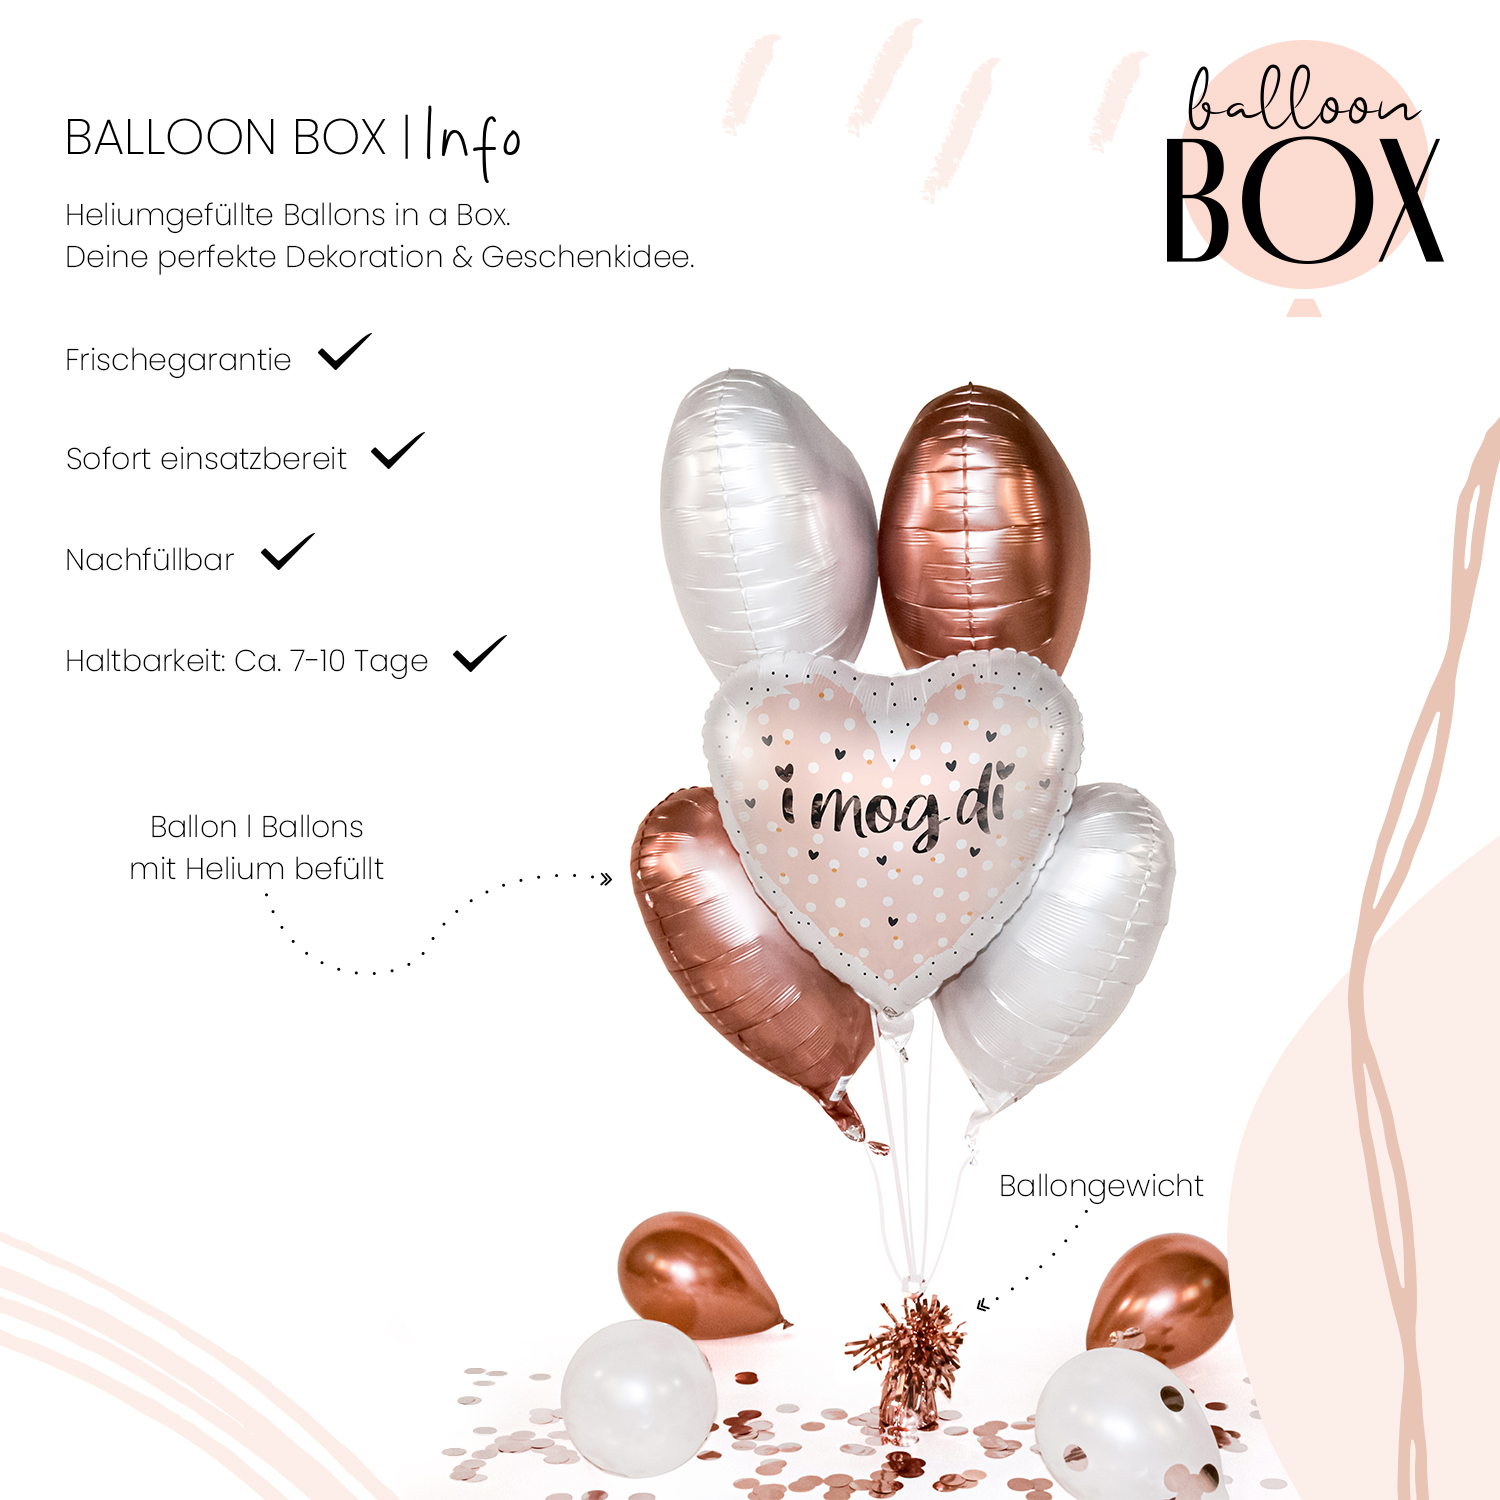 Heliumballon in a Box - i mog di